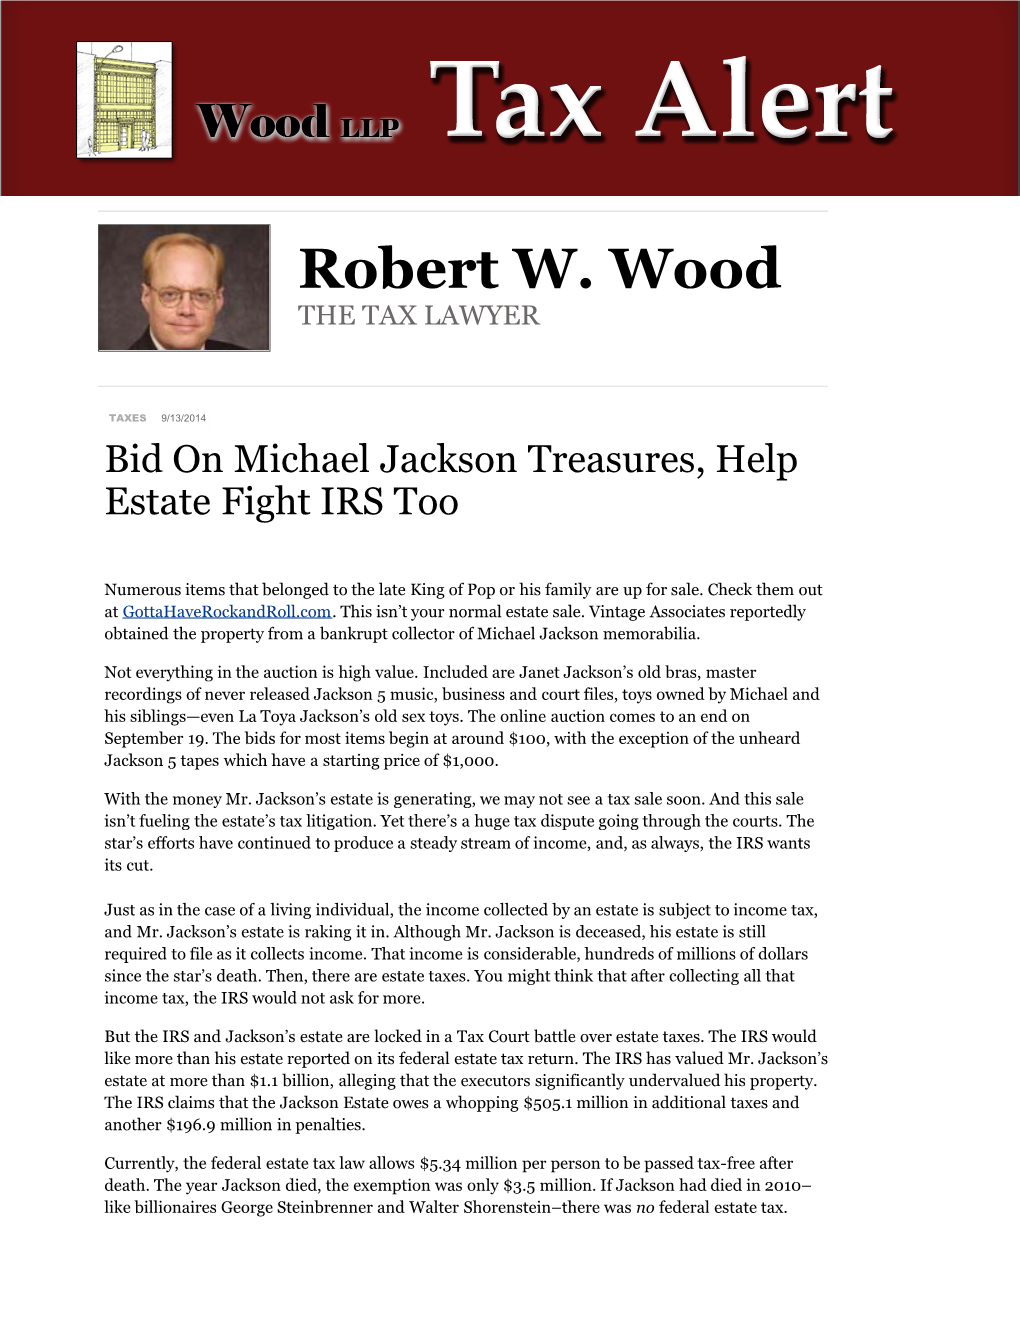 Bid on Michael Jackson Treasures, Help Estate Fight IRS Too